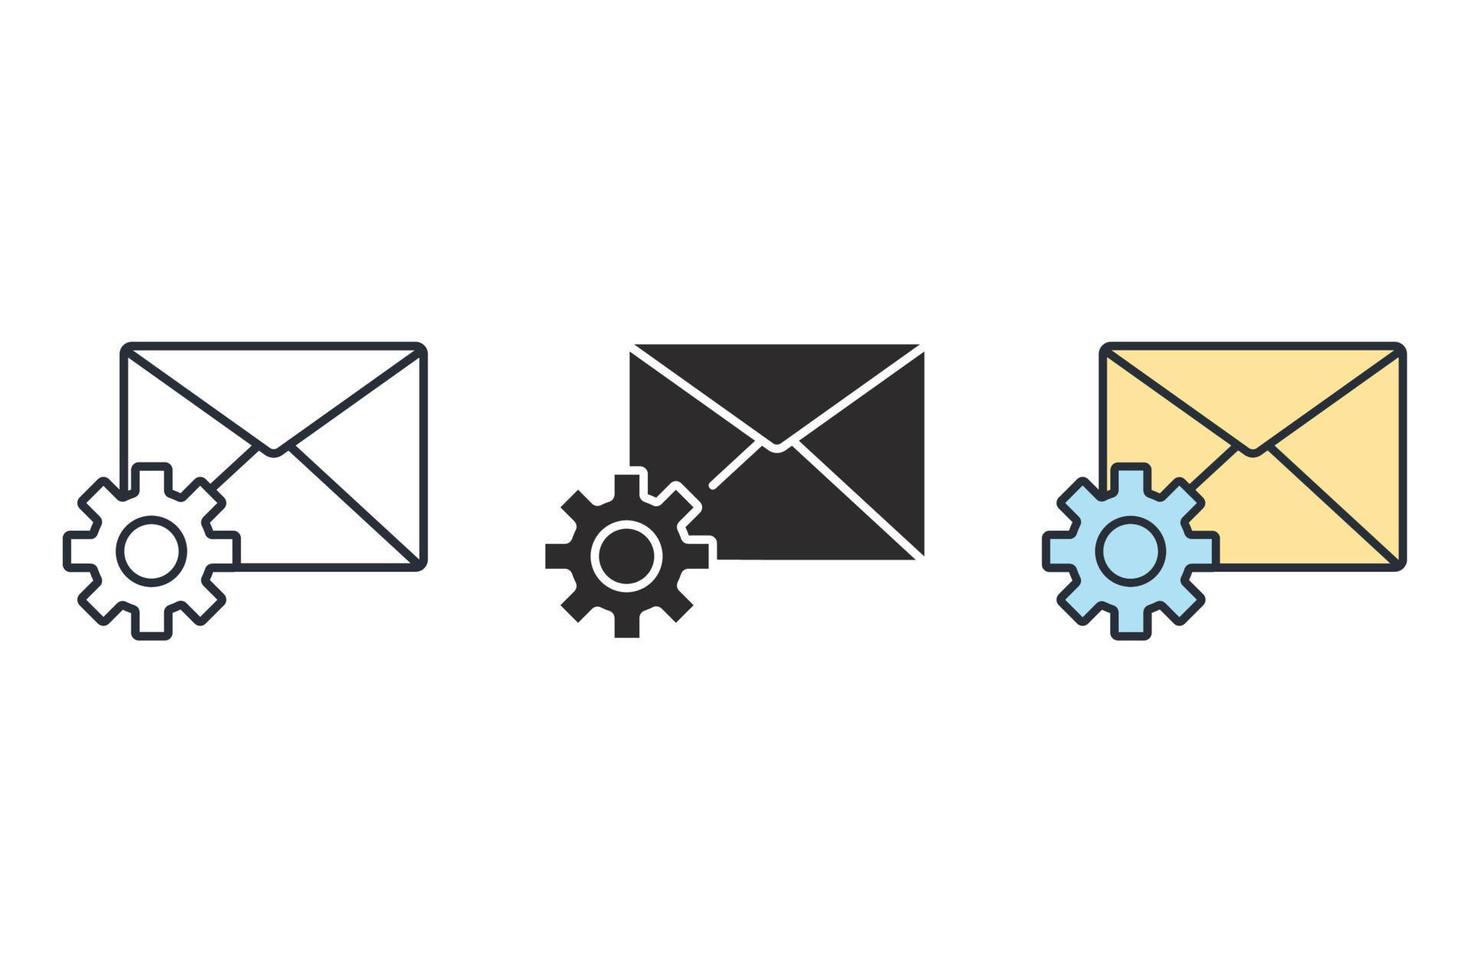 icone di impostazione e-mail simbolo elementi vettoriali per il web infografico